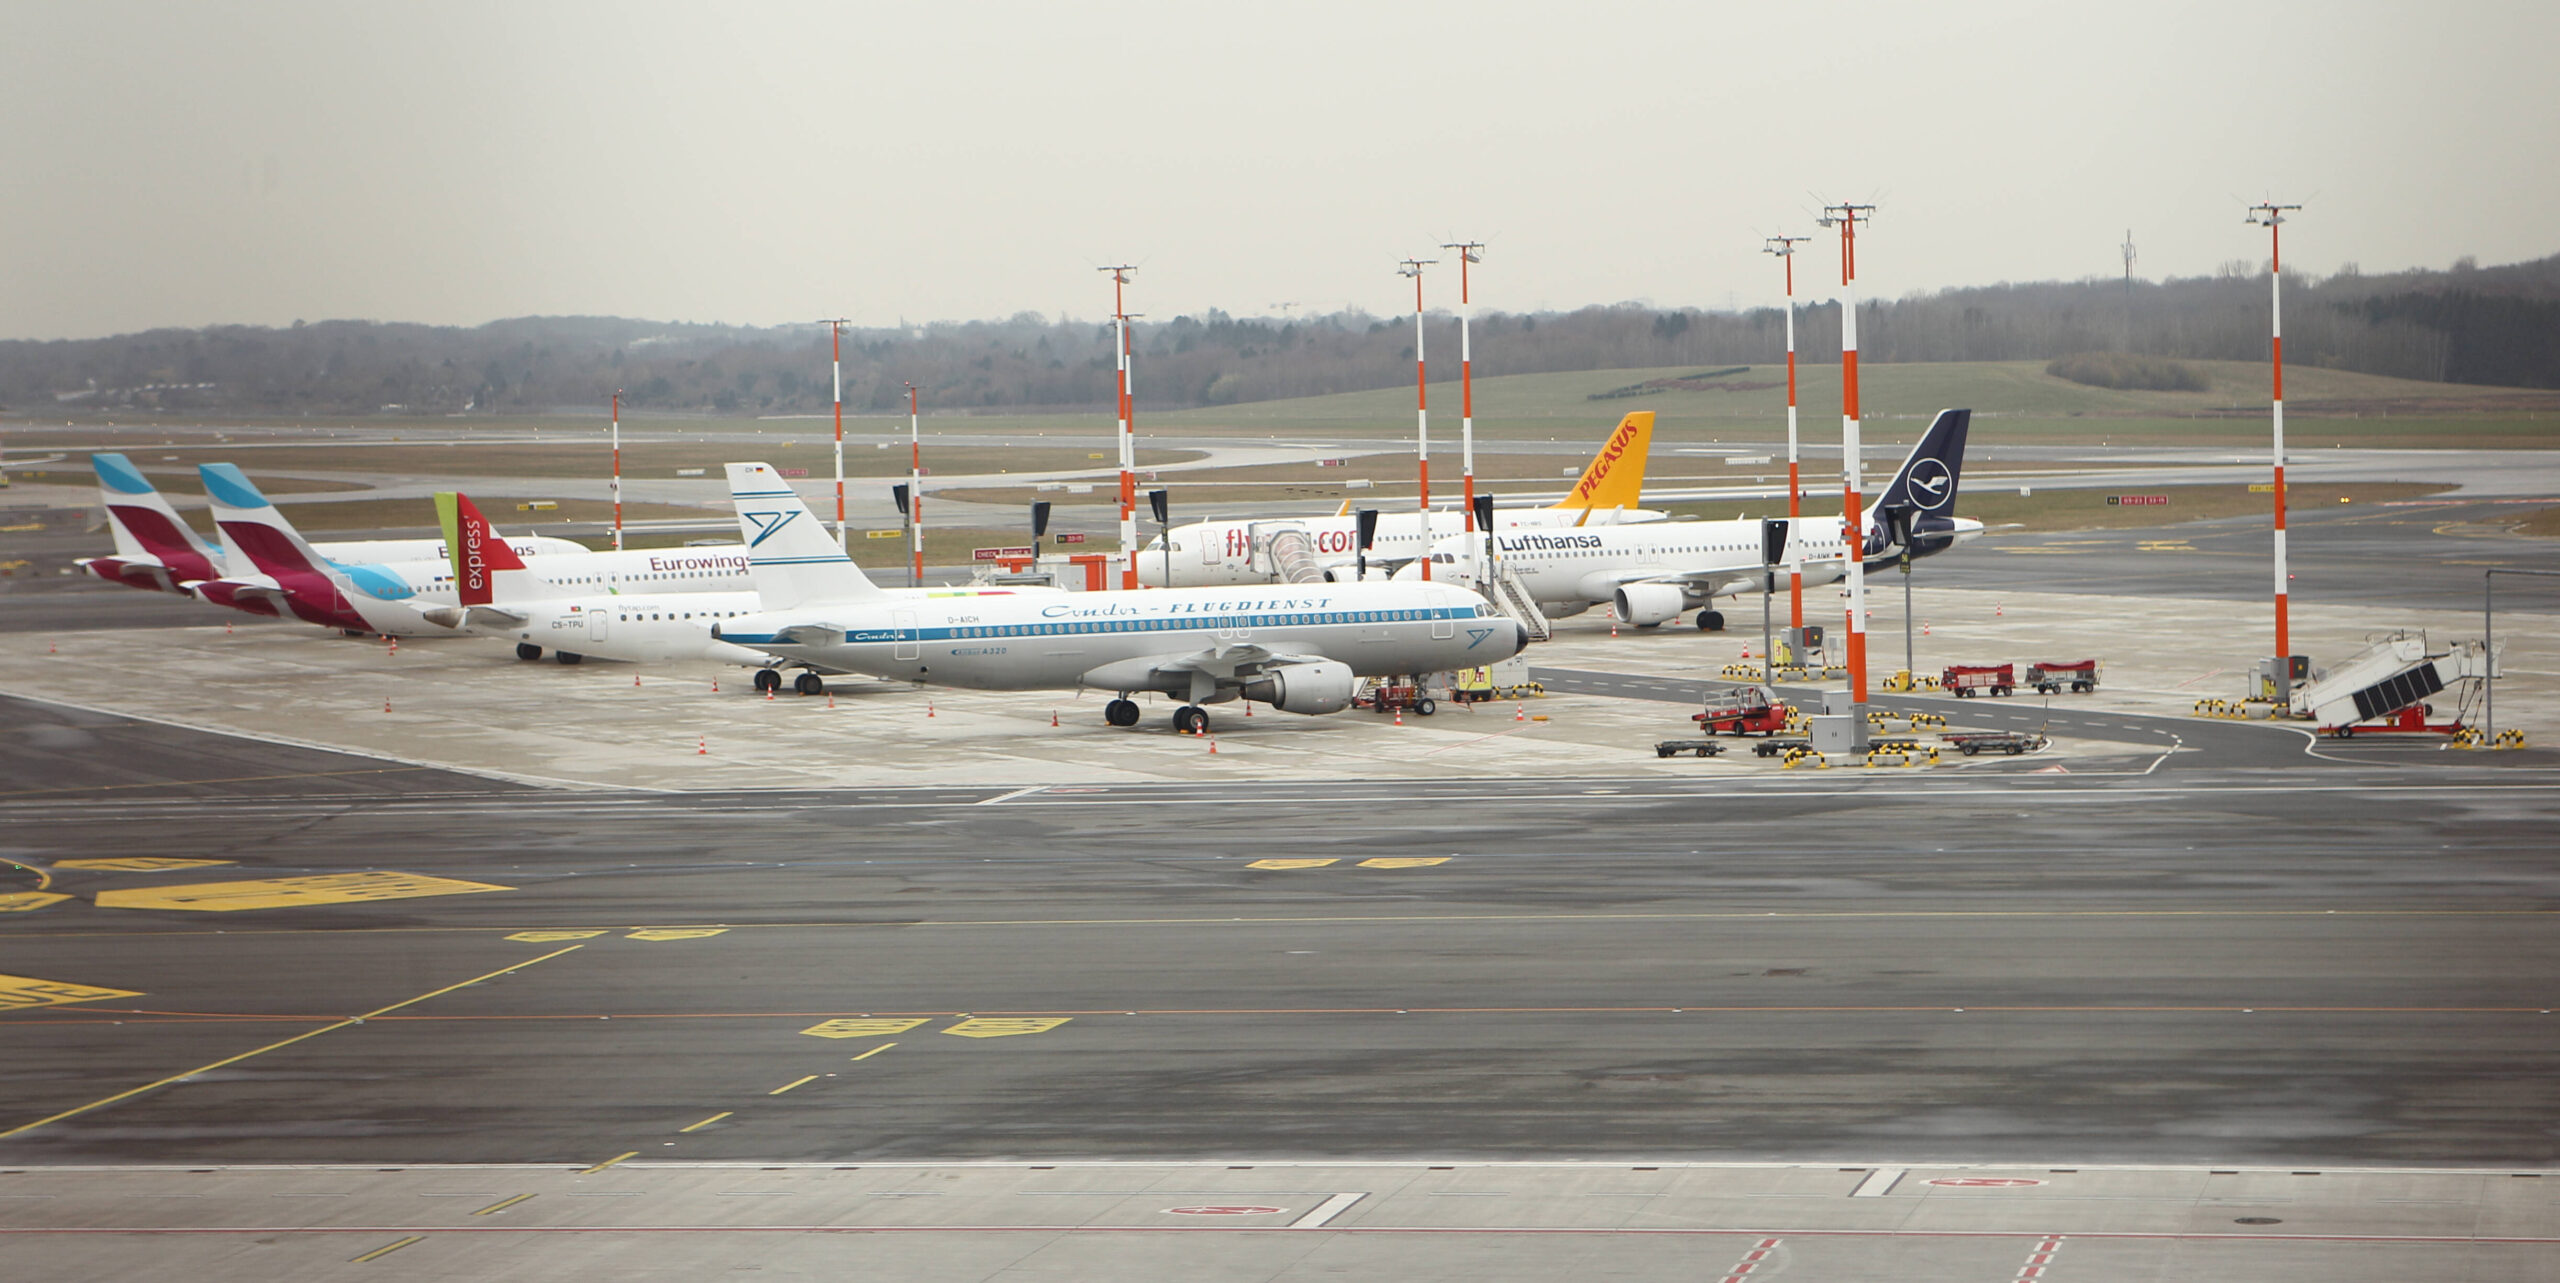 Flugzeuge von verschiedenen Fluglinien stehen auf dem Flugplatz vom Flughafen Hamburg.